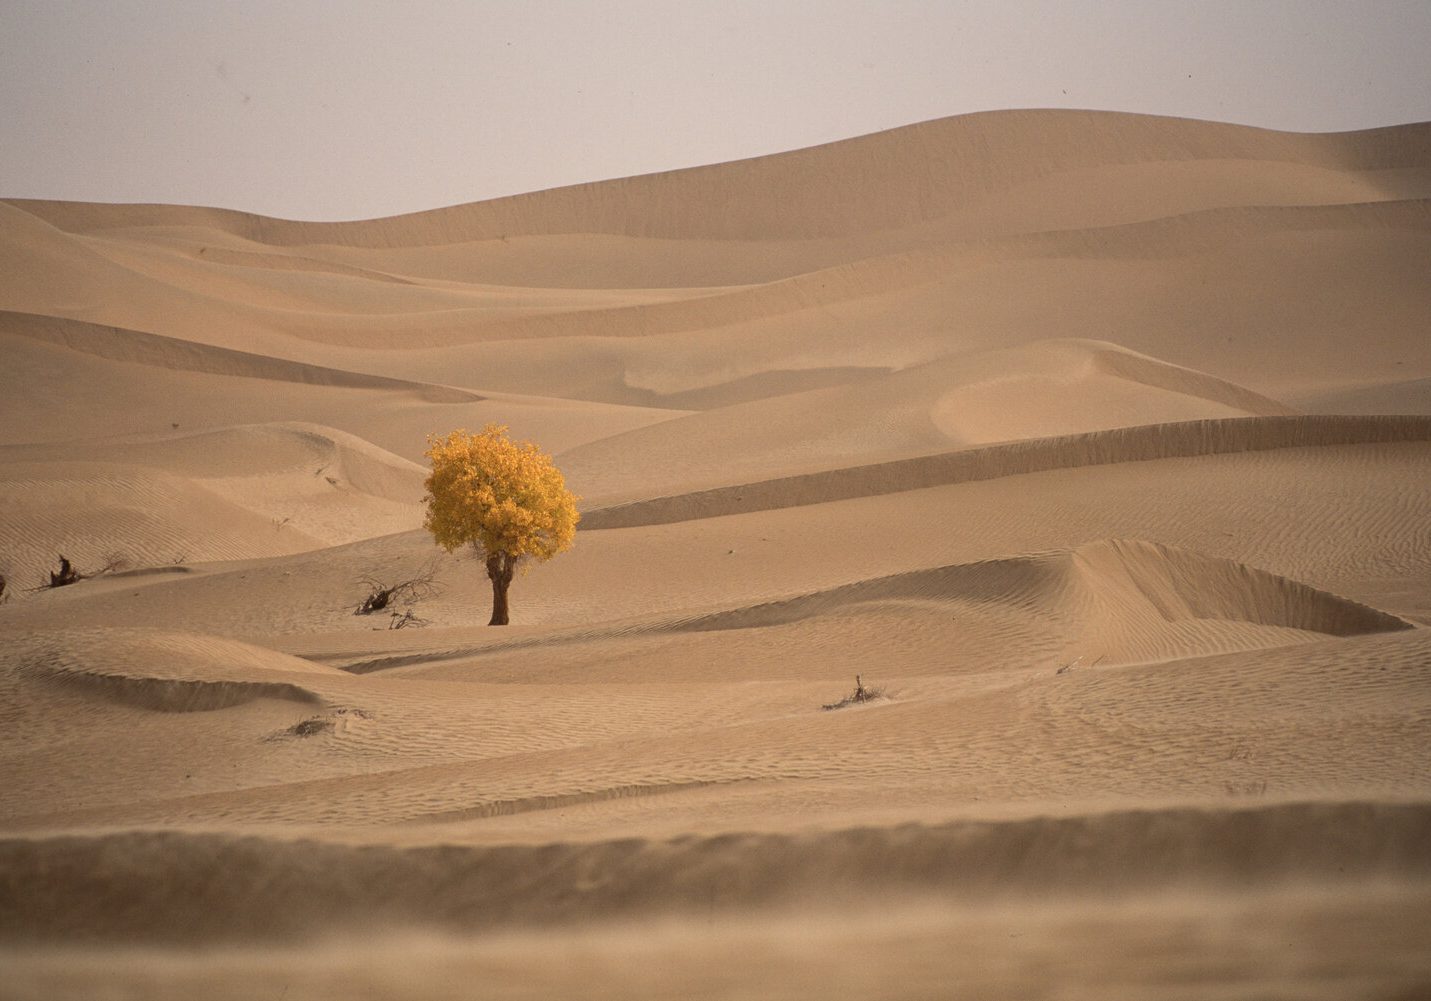 The popular tree between dunes